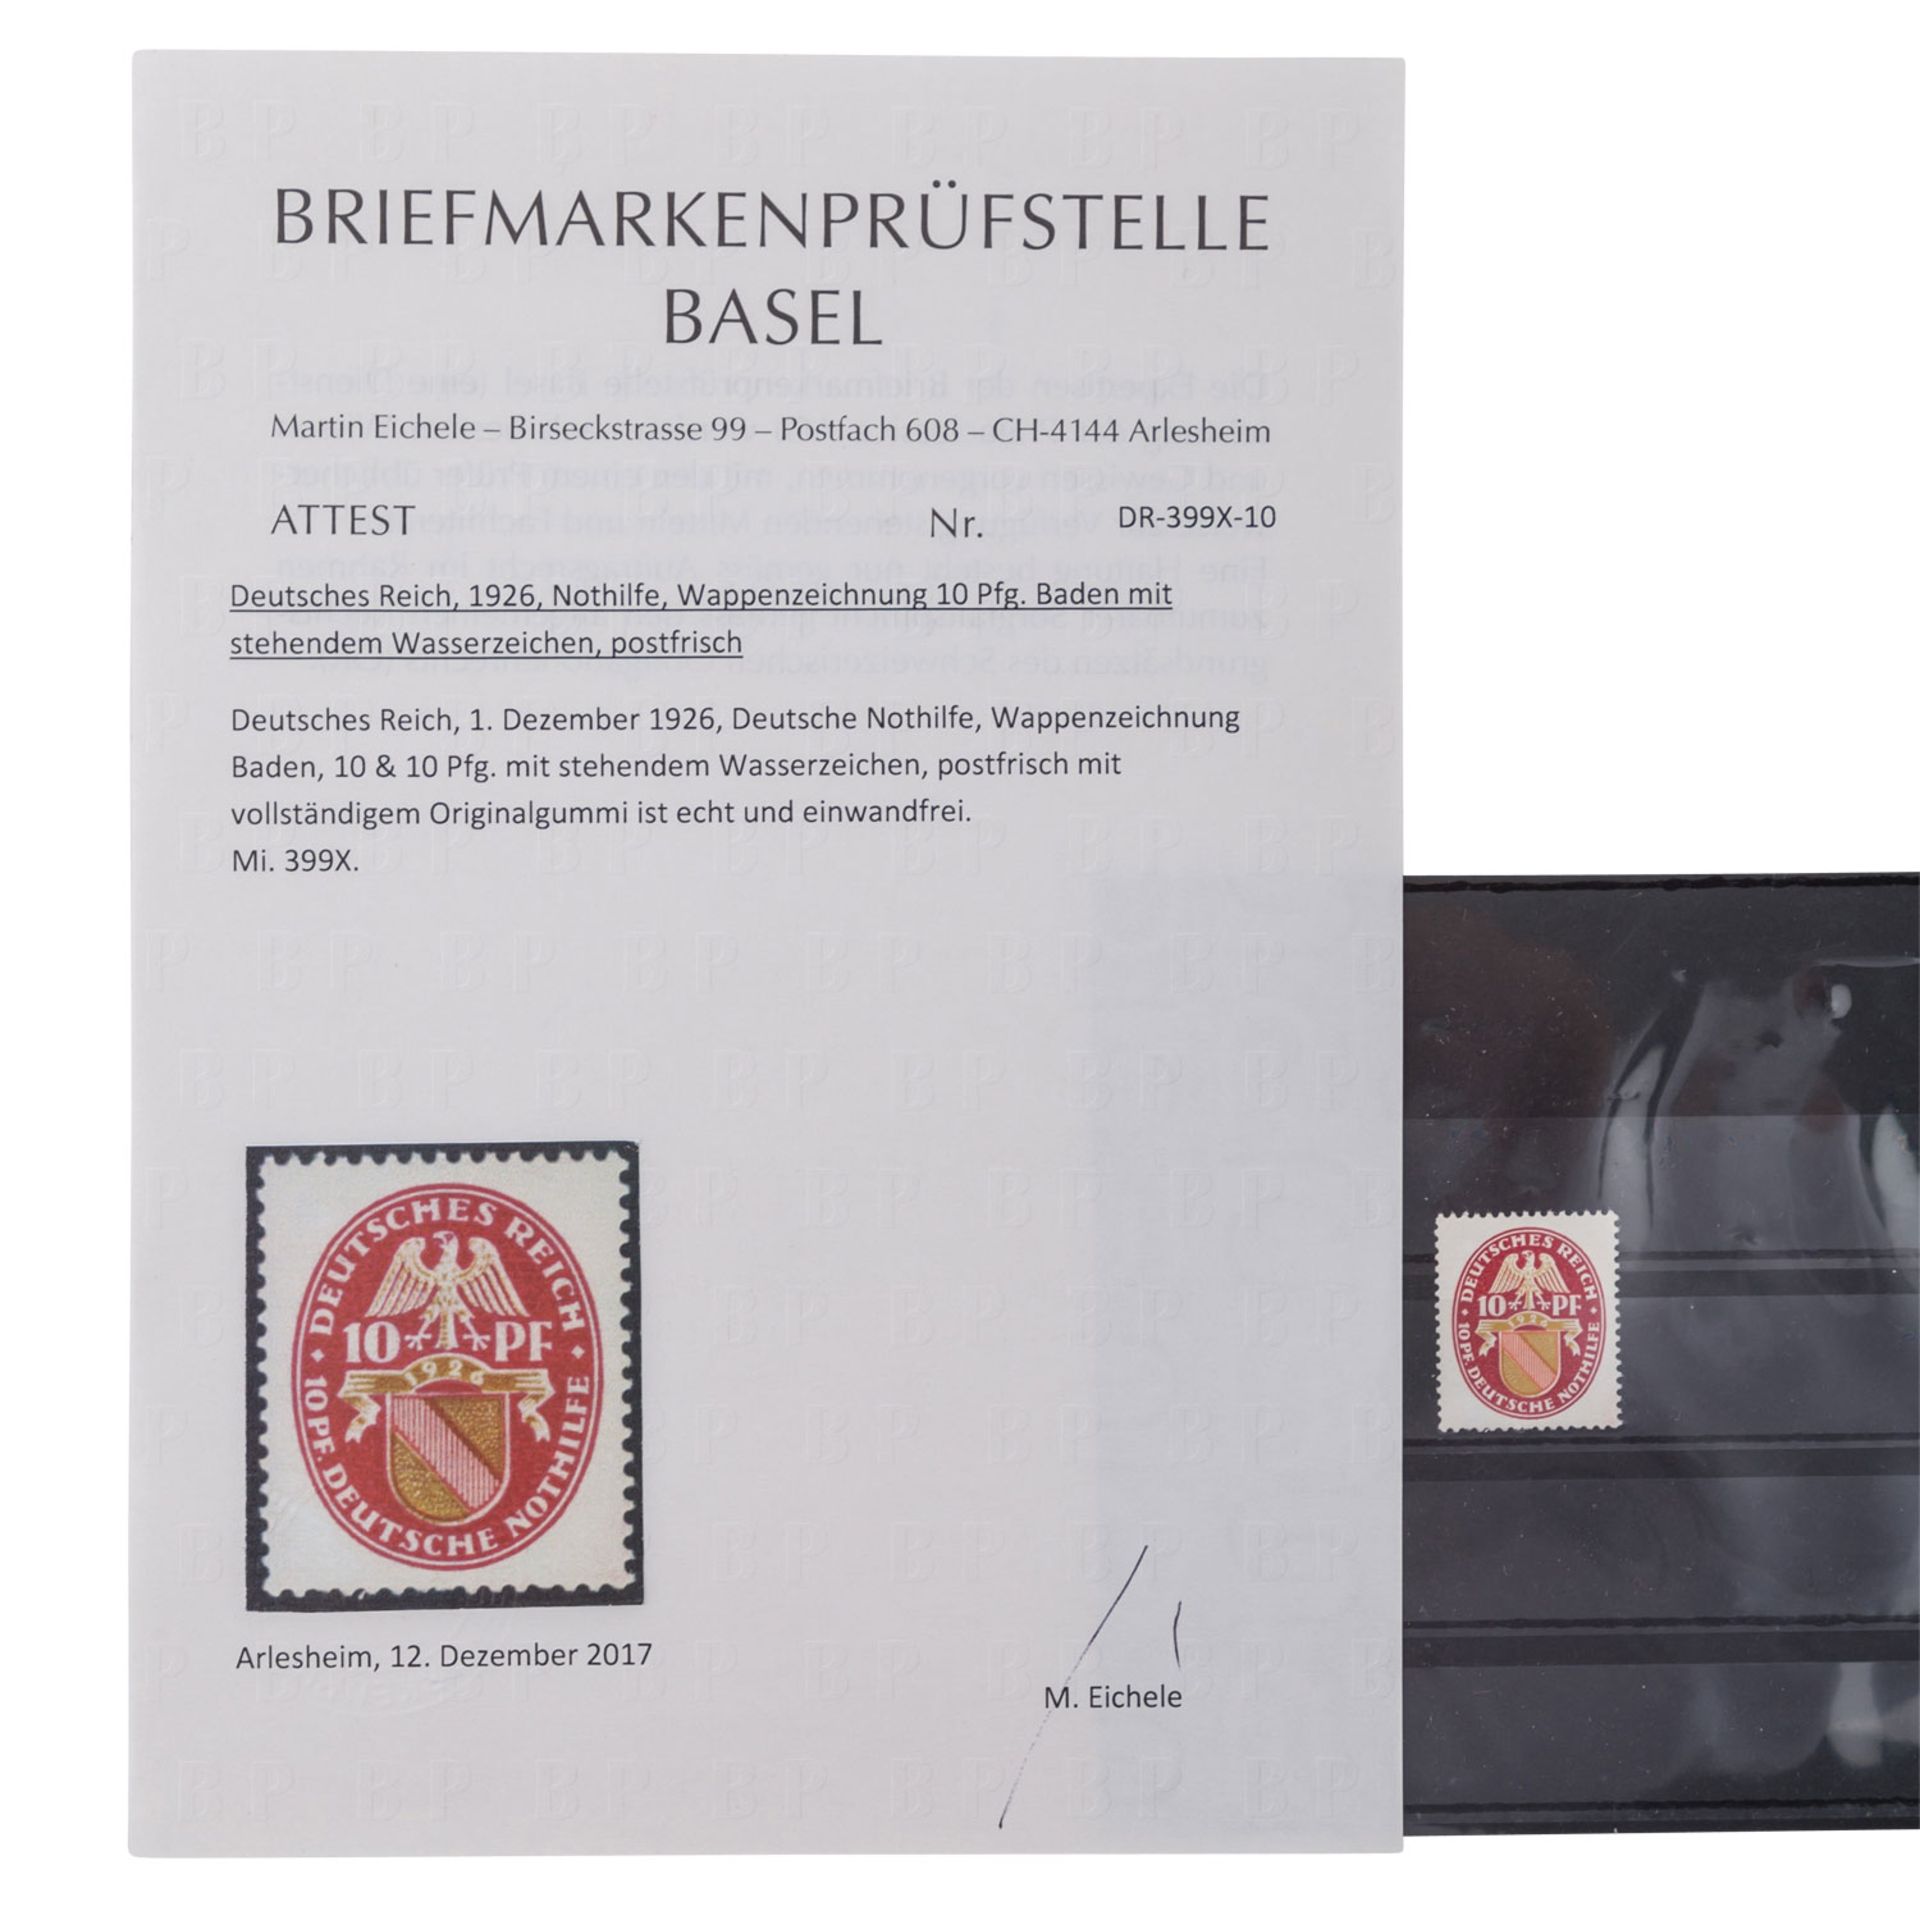 Deutsches Reich 1926 Nothilfe,Wappenzeichnung 10 Pf. Baden mit stehendem Wasserzeichen, postfrisch